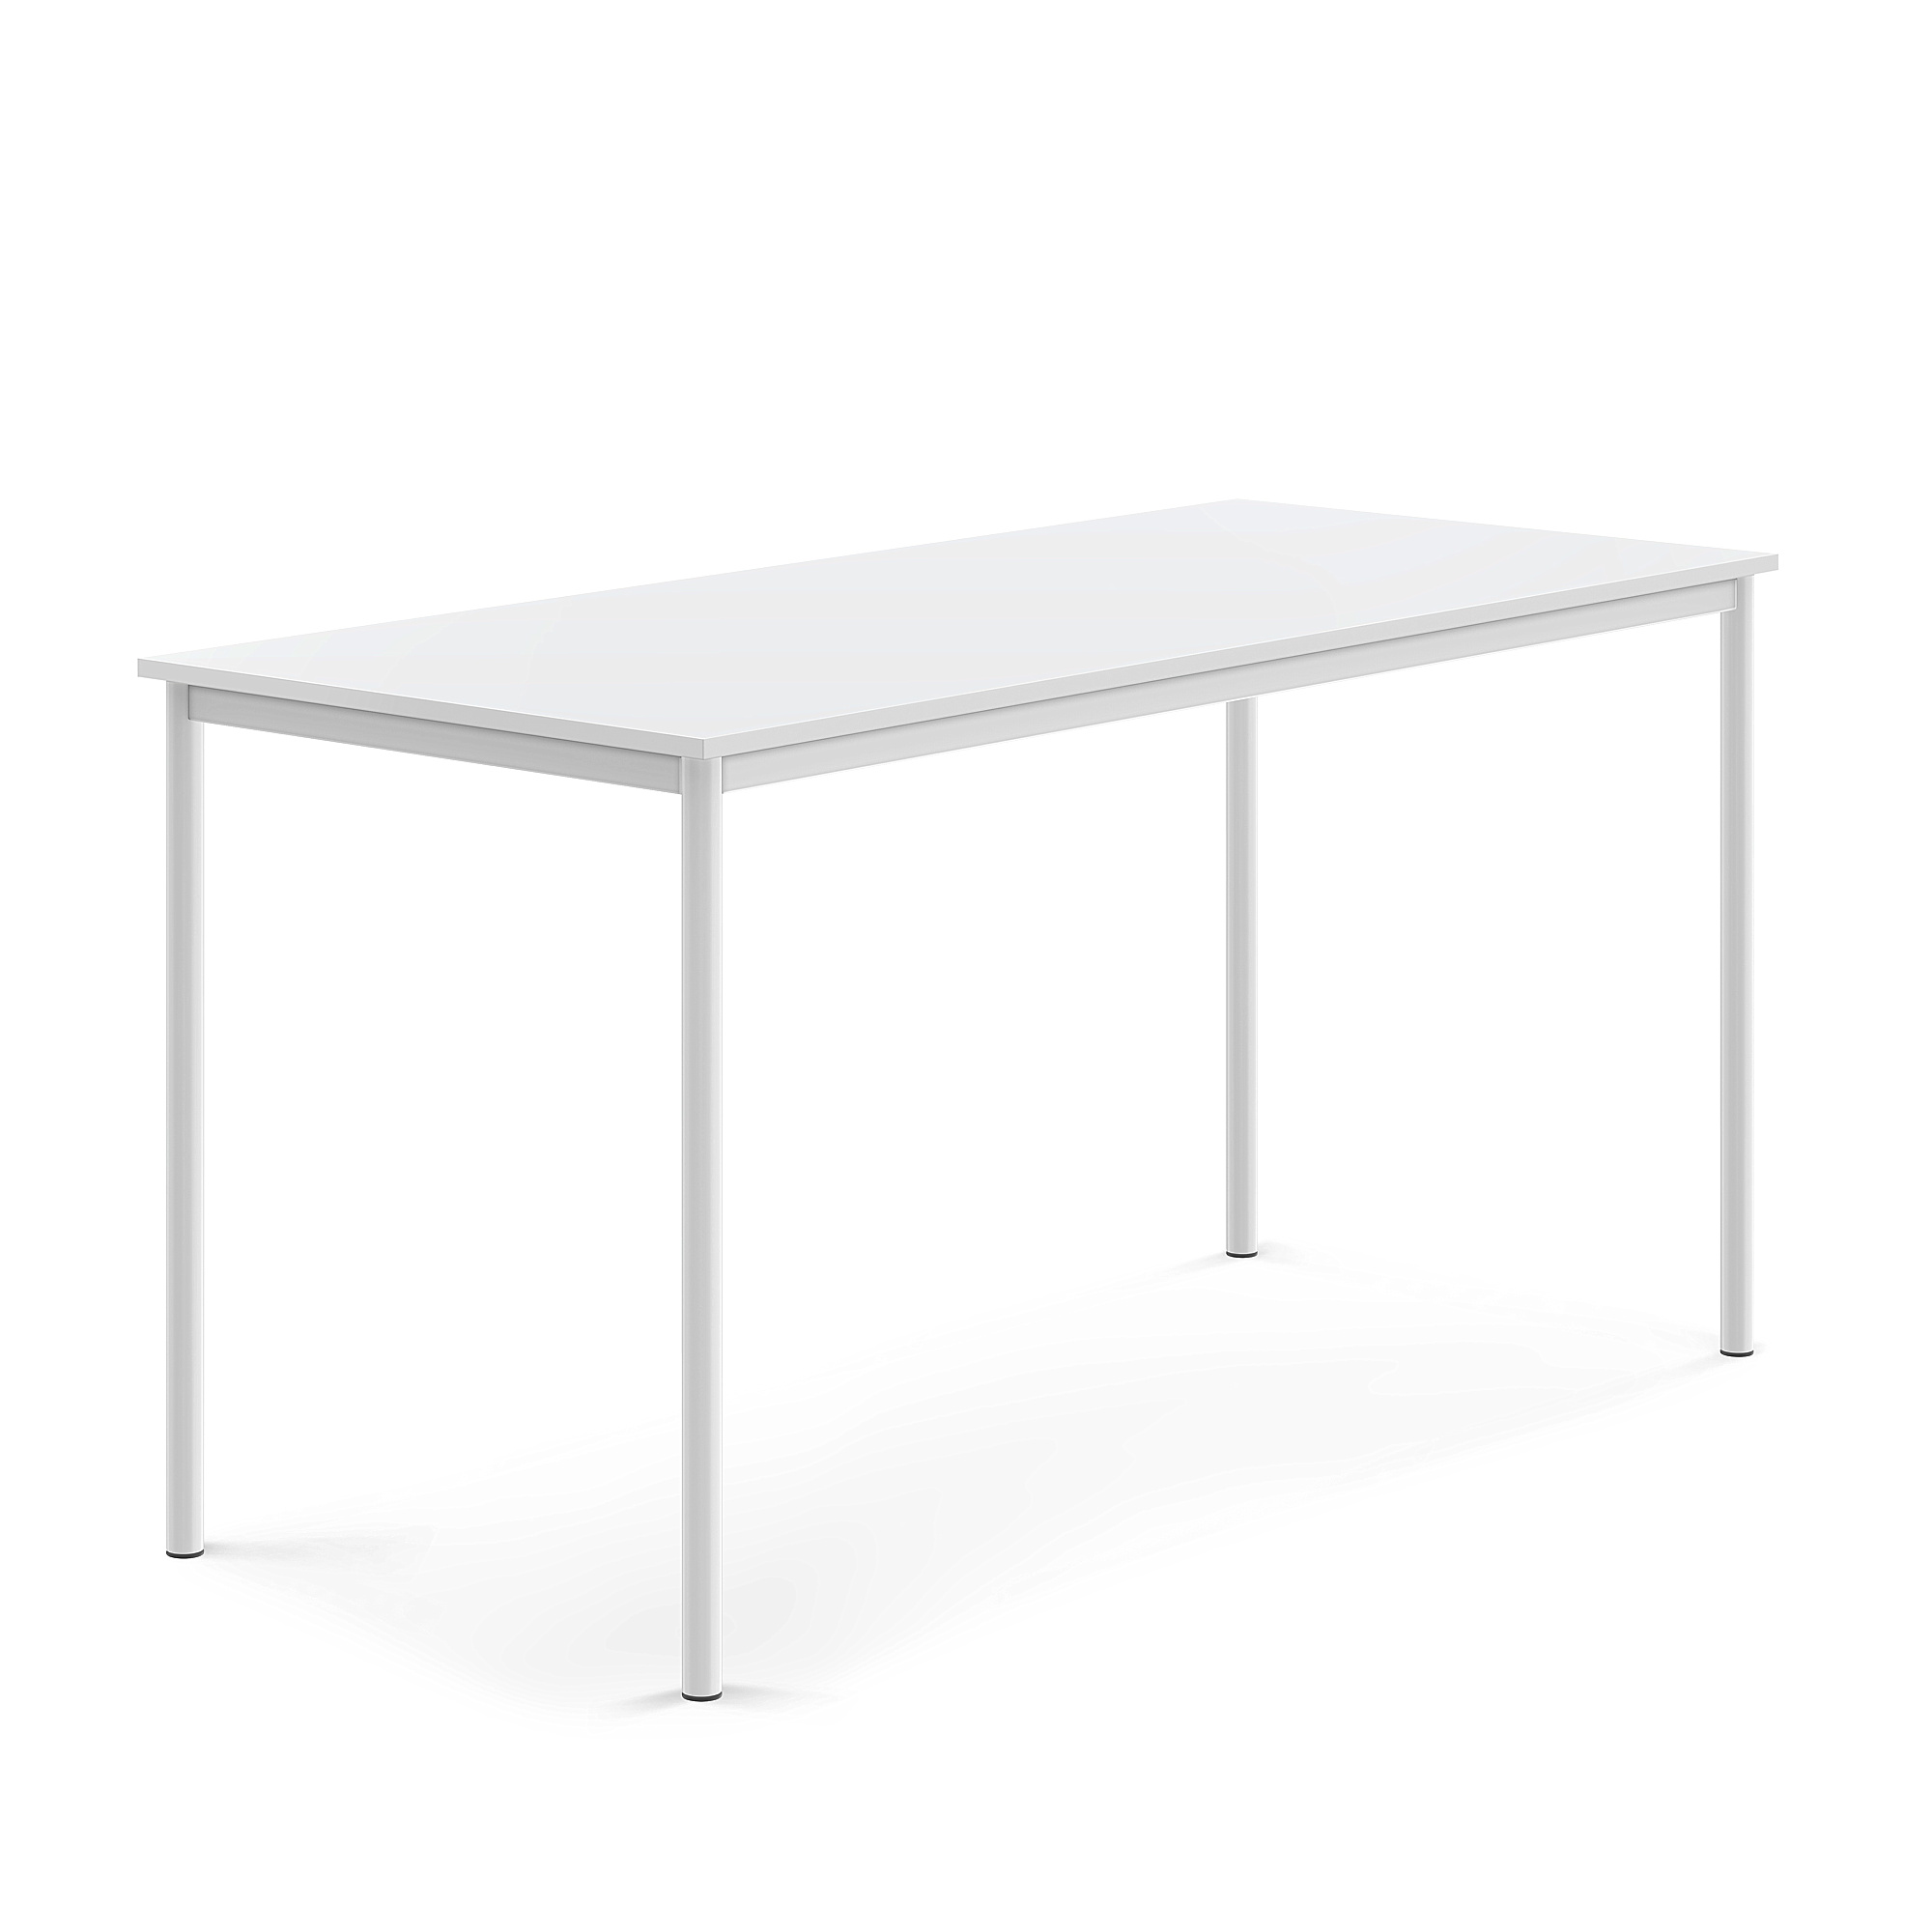 Stůl BORÅS, 1800x800x900 mm, bílé nohy, HPL deska, bílá